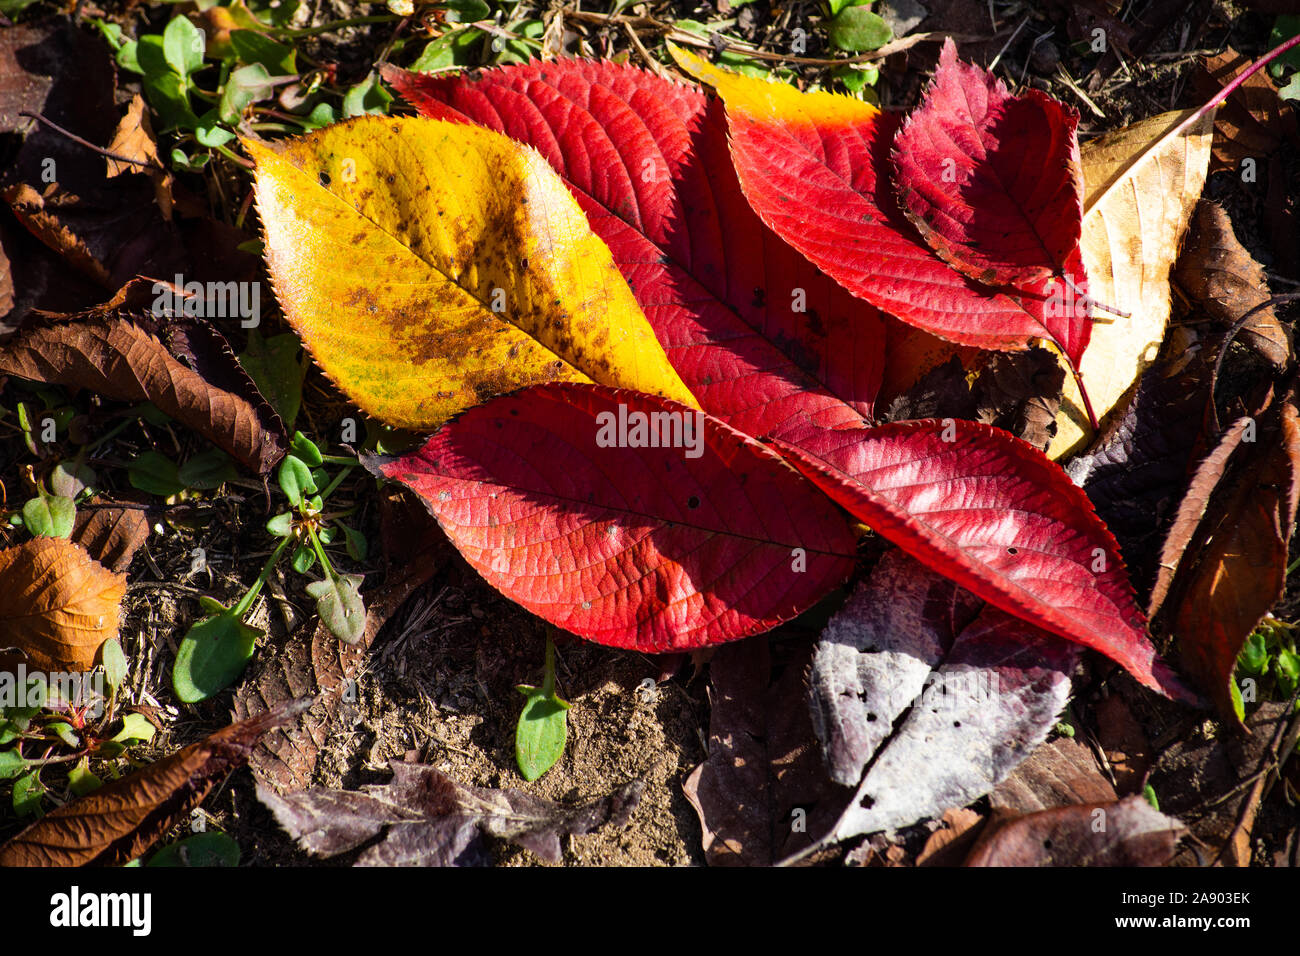 Bellissimi alberi con le loro foglie di autunno presentando in splendidi colori vibranti di rosso, giallo, arancio e verde. Foto Stock